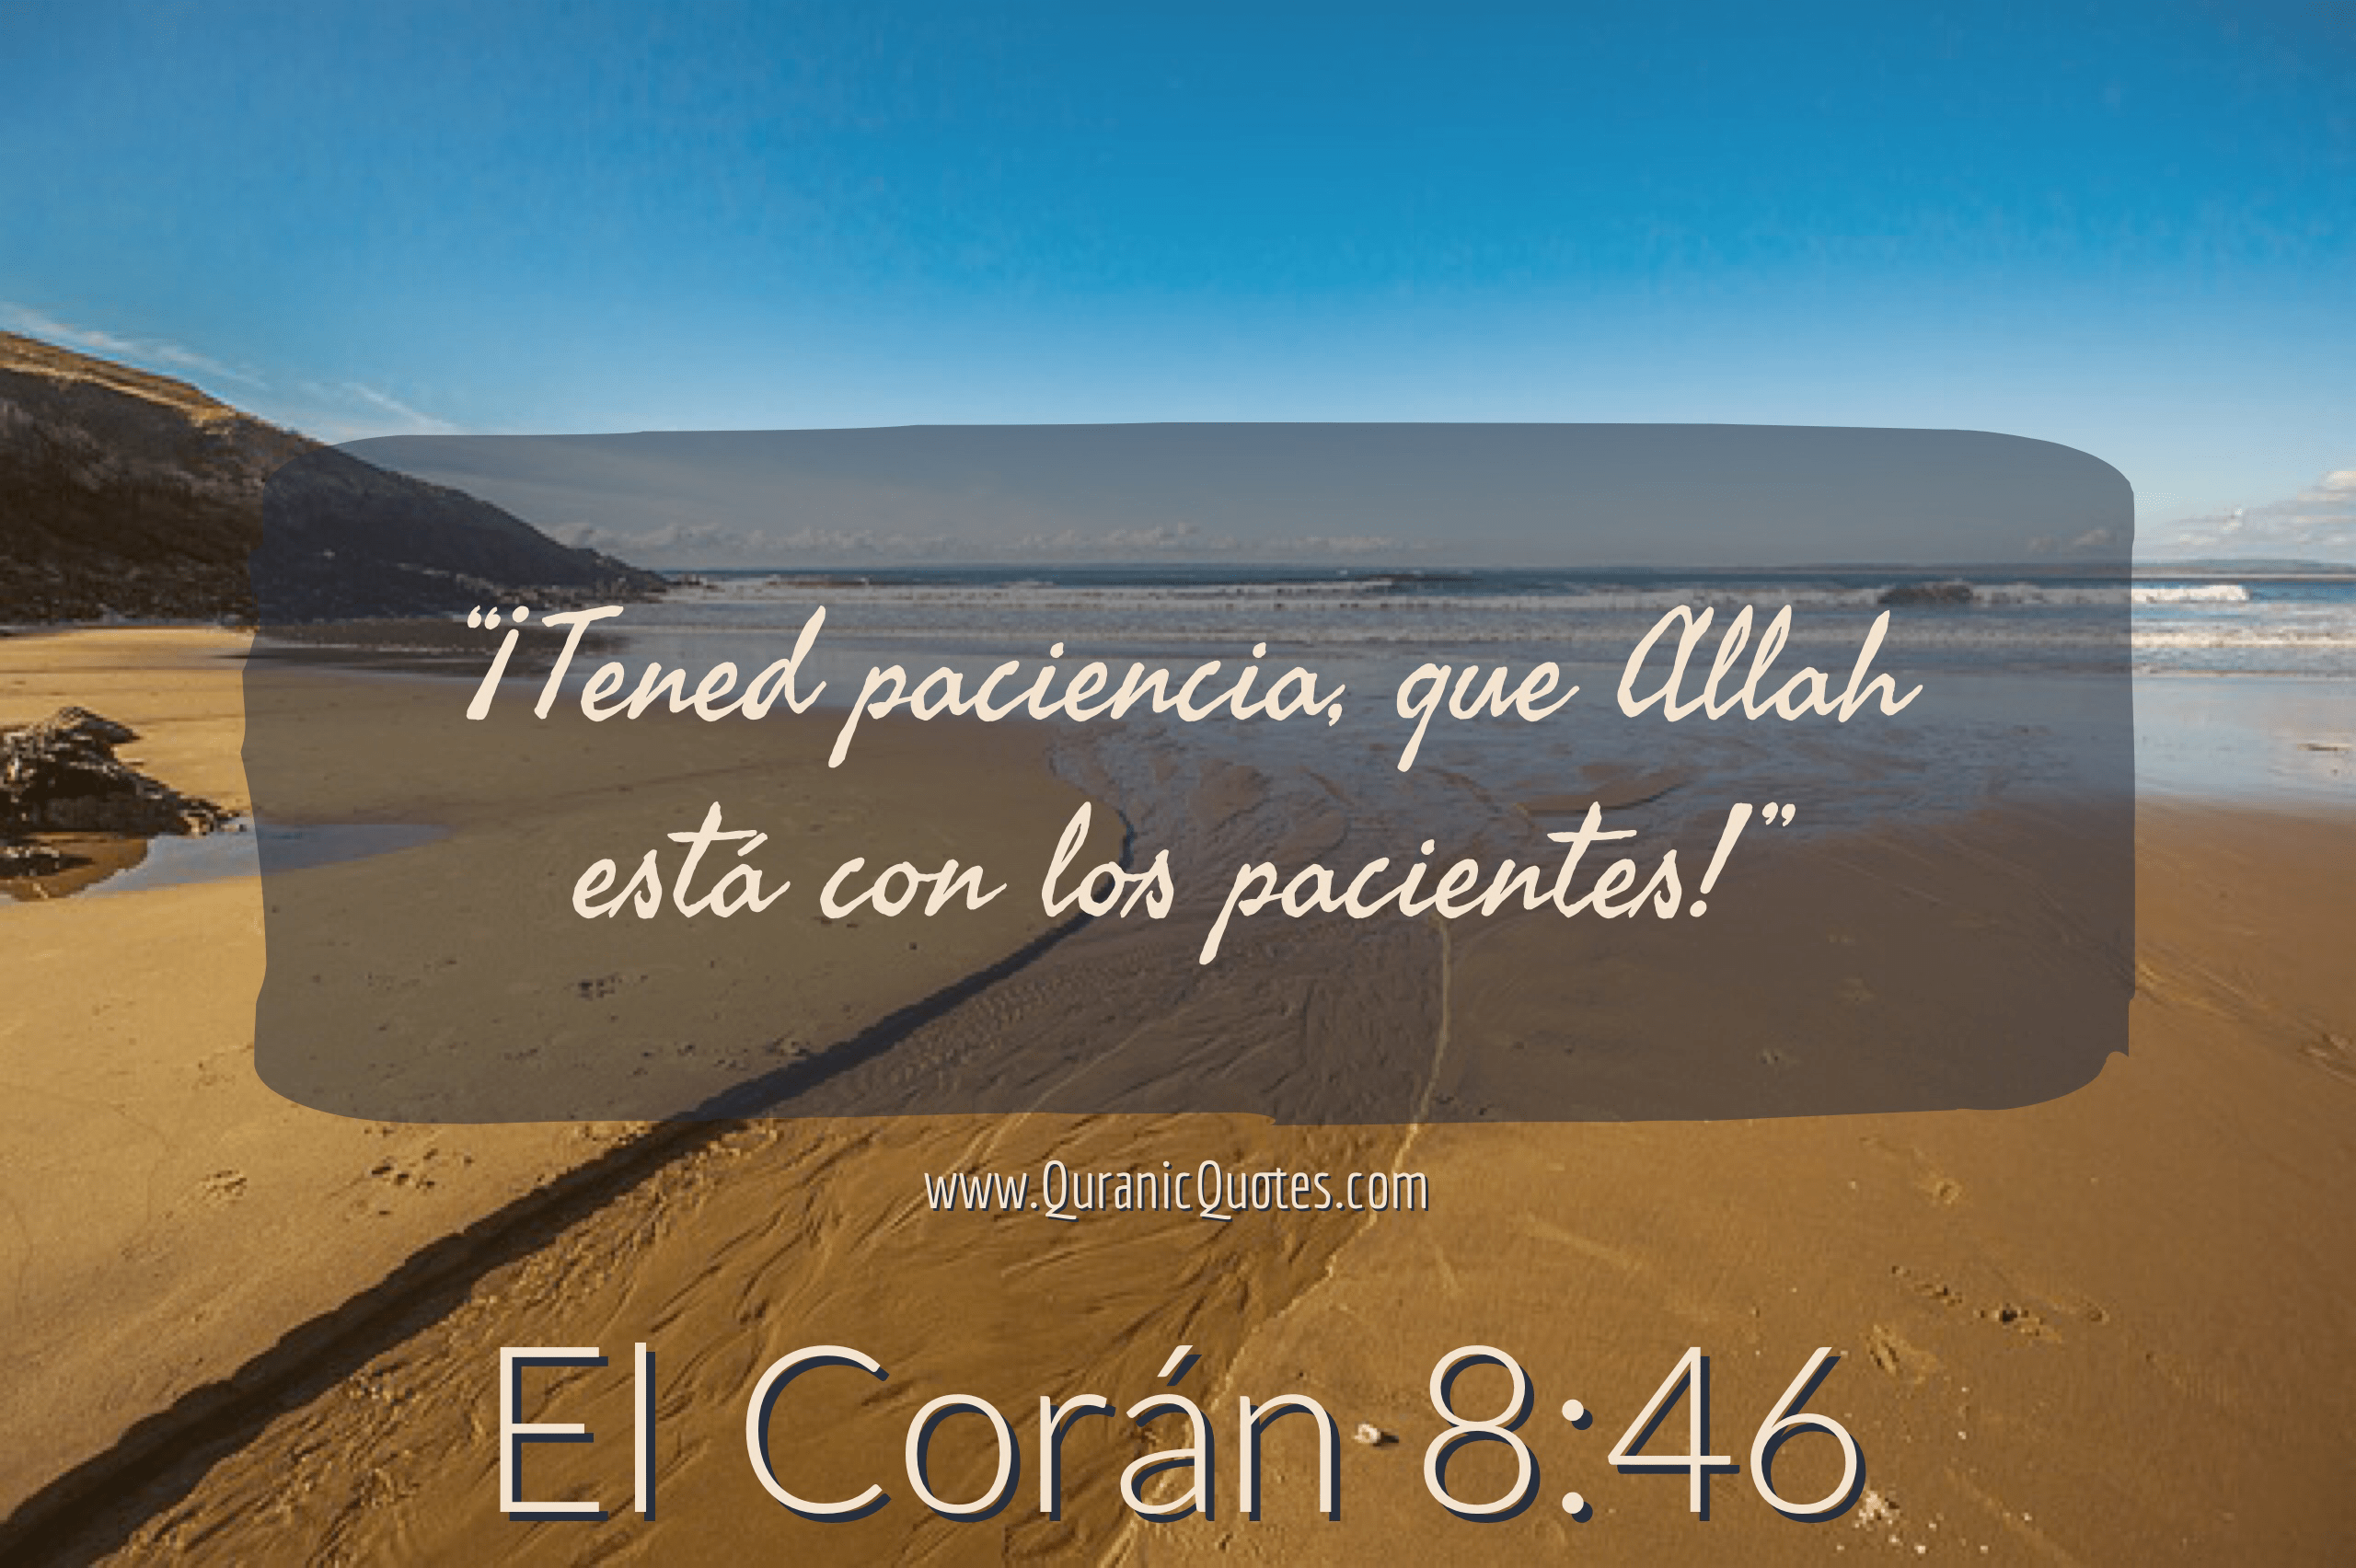 Quranic Quotes Español #218